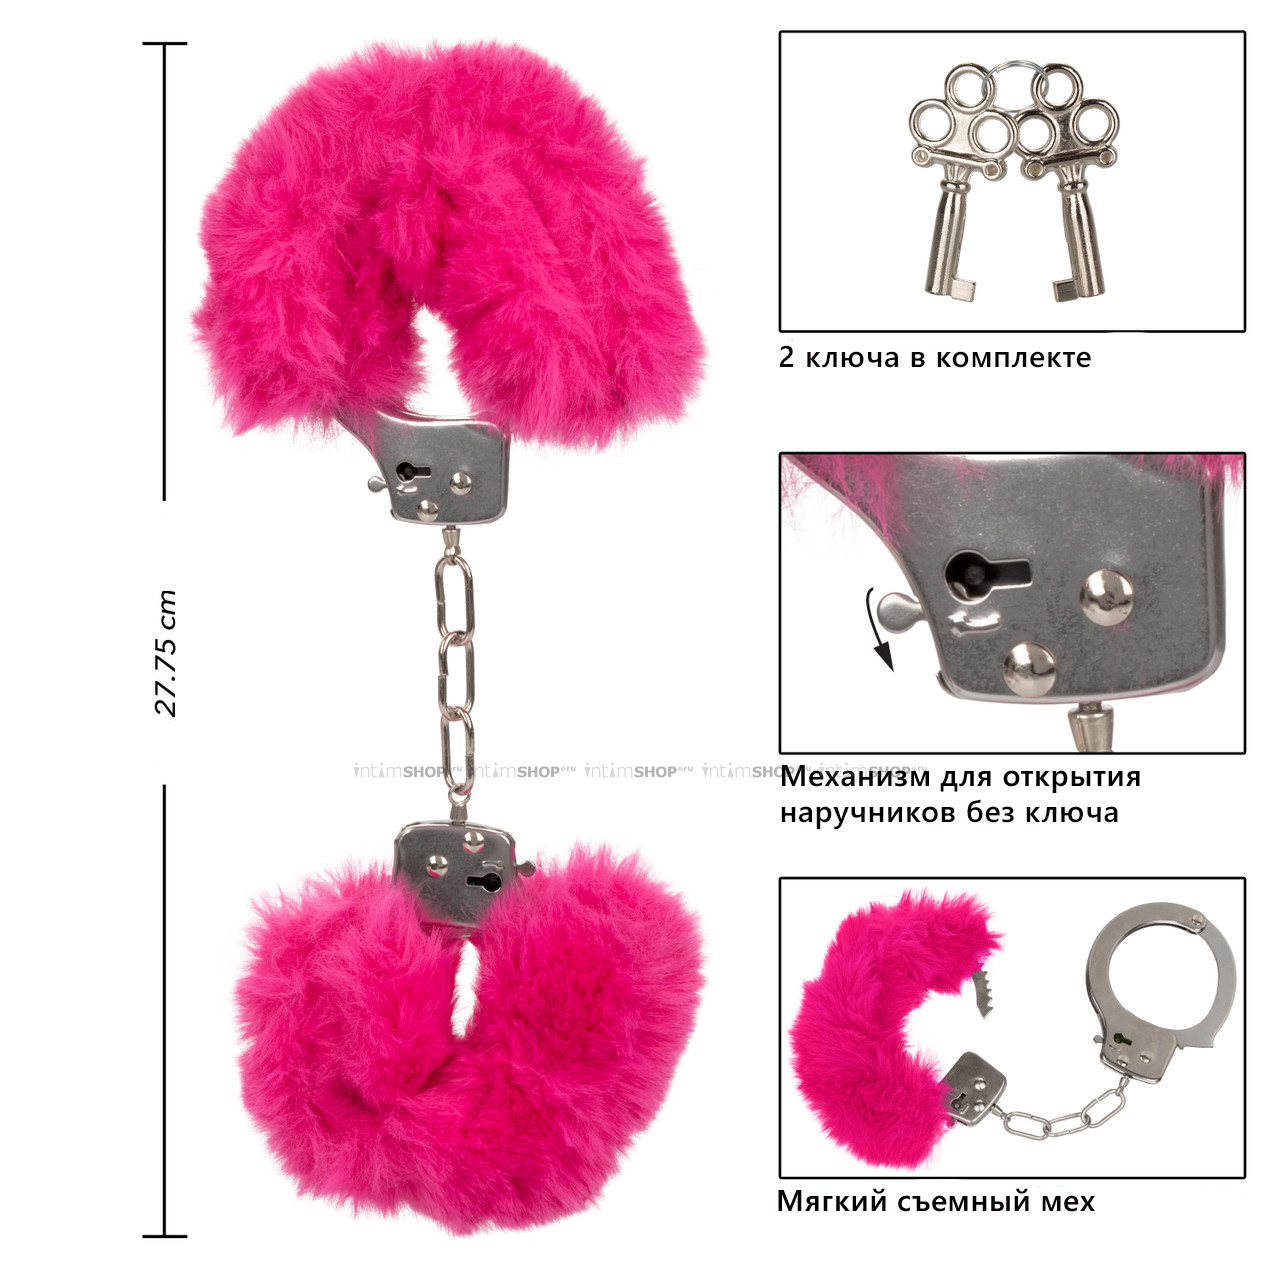 Наручники меховые CalExotics Ultra Fluffy Furry, розовые